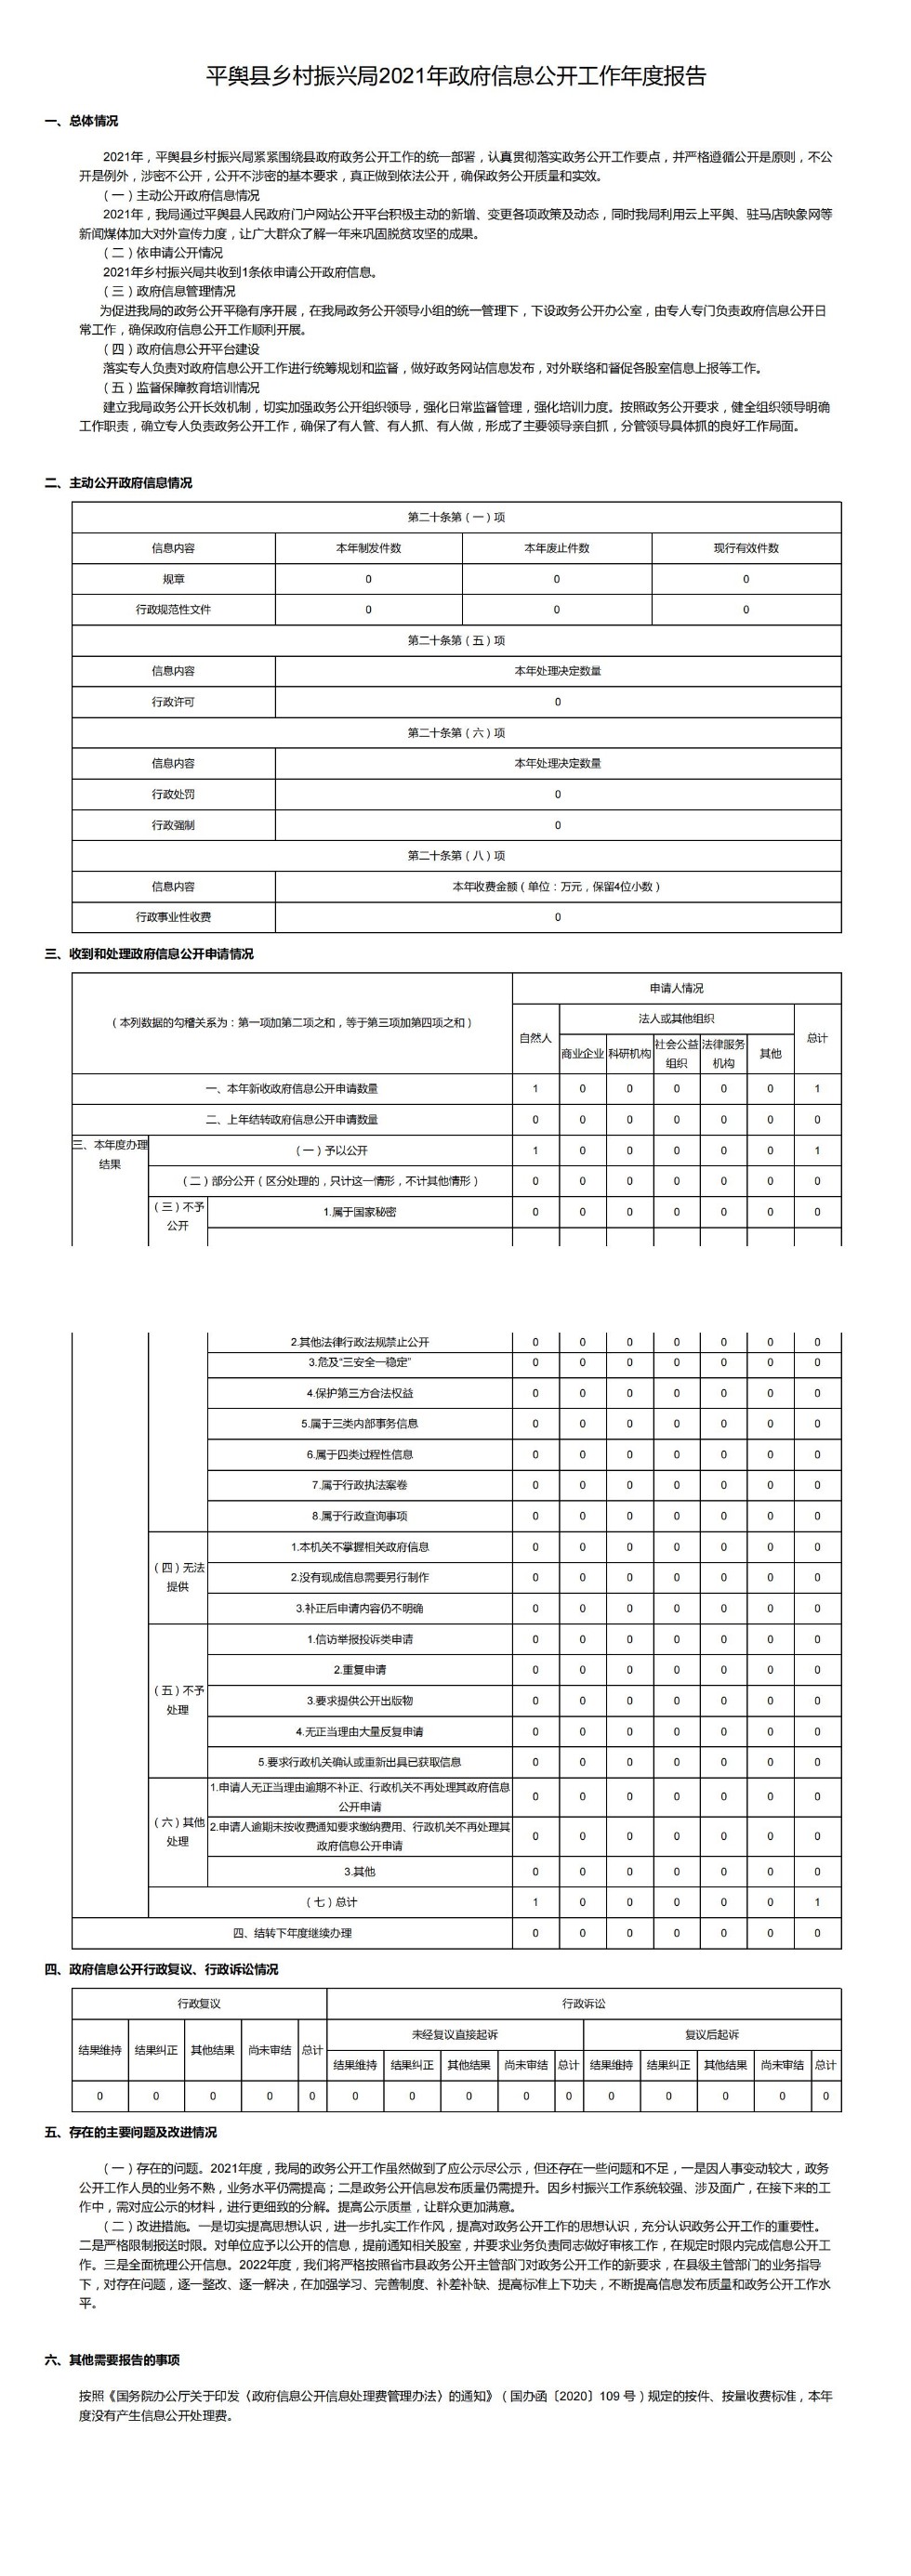 平舆县乡村振兴局2021年政府信息公开工作年度报告_00.jpg